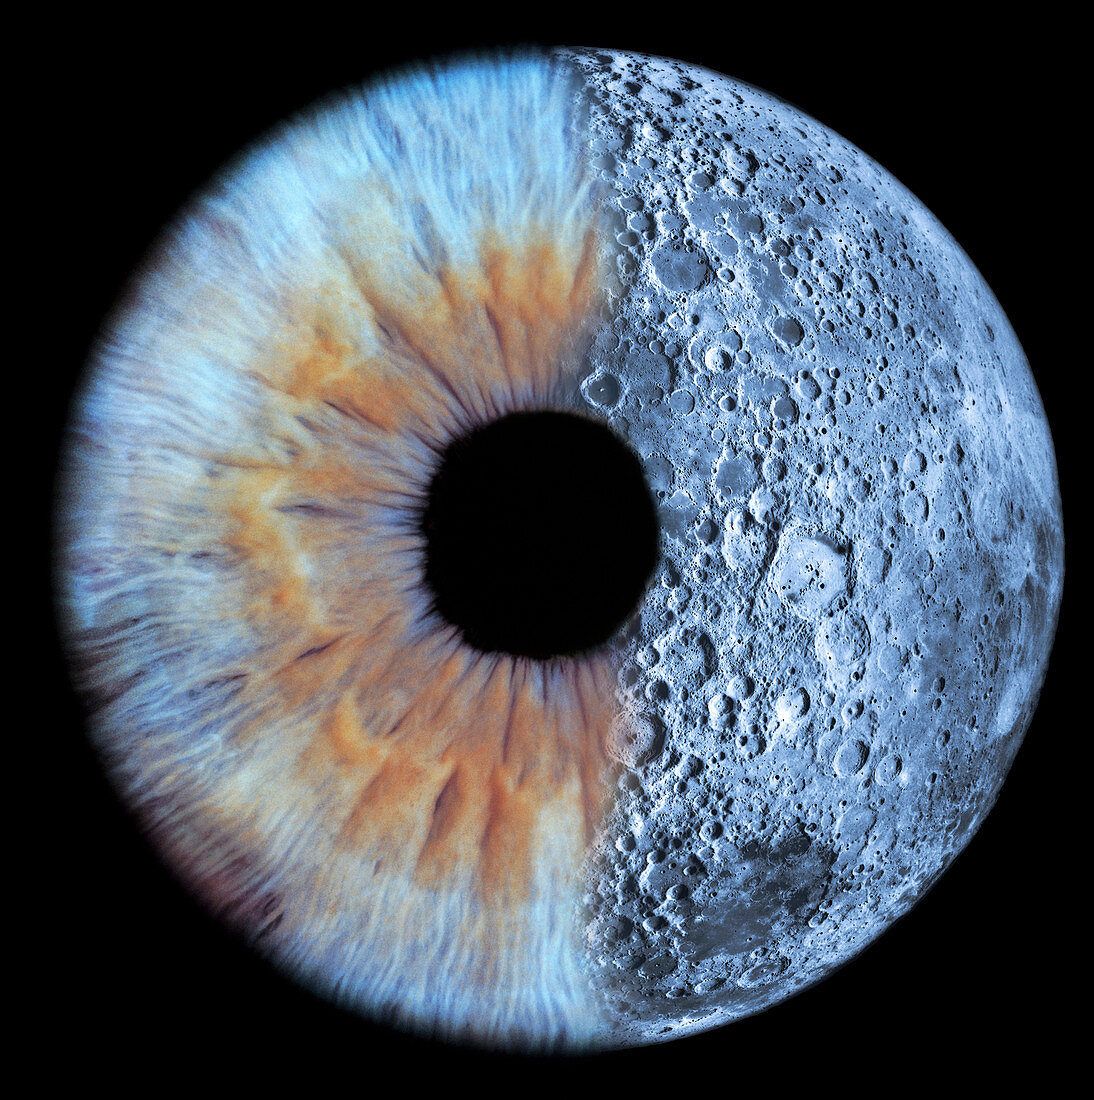 Moon and eye